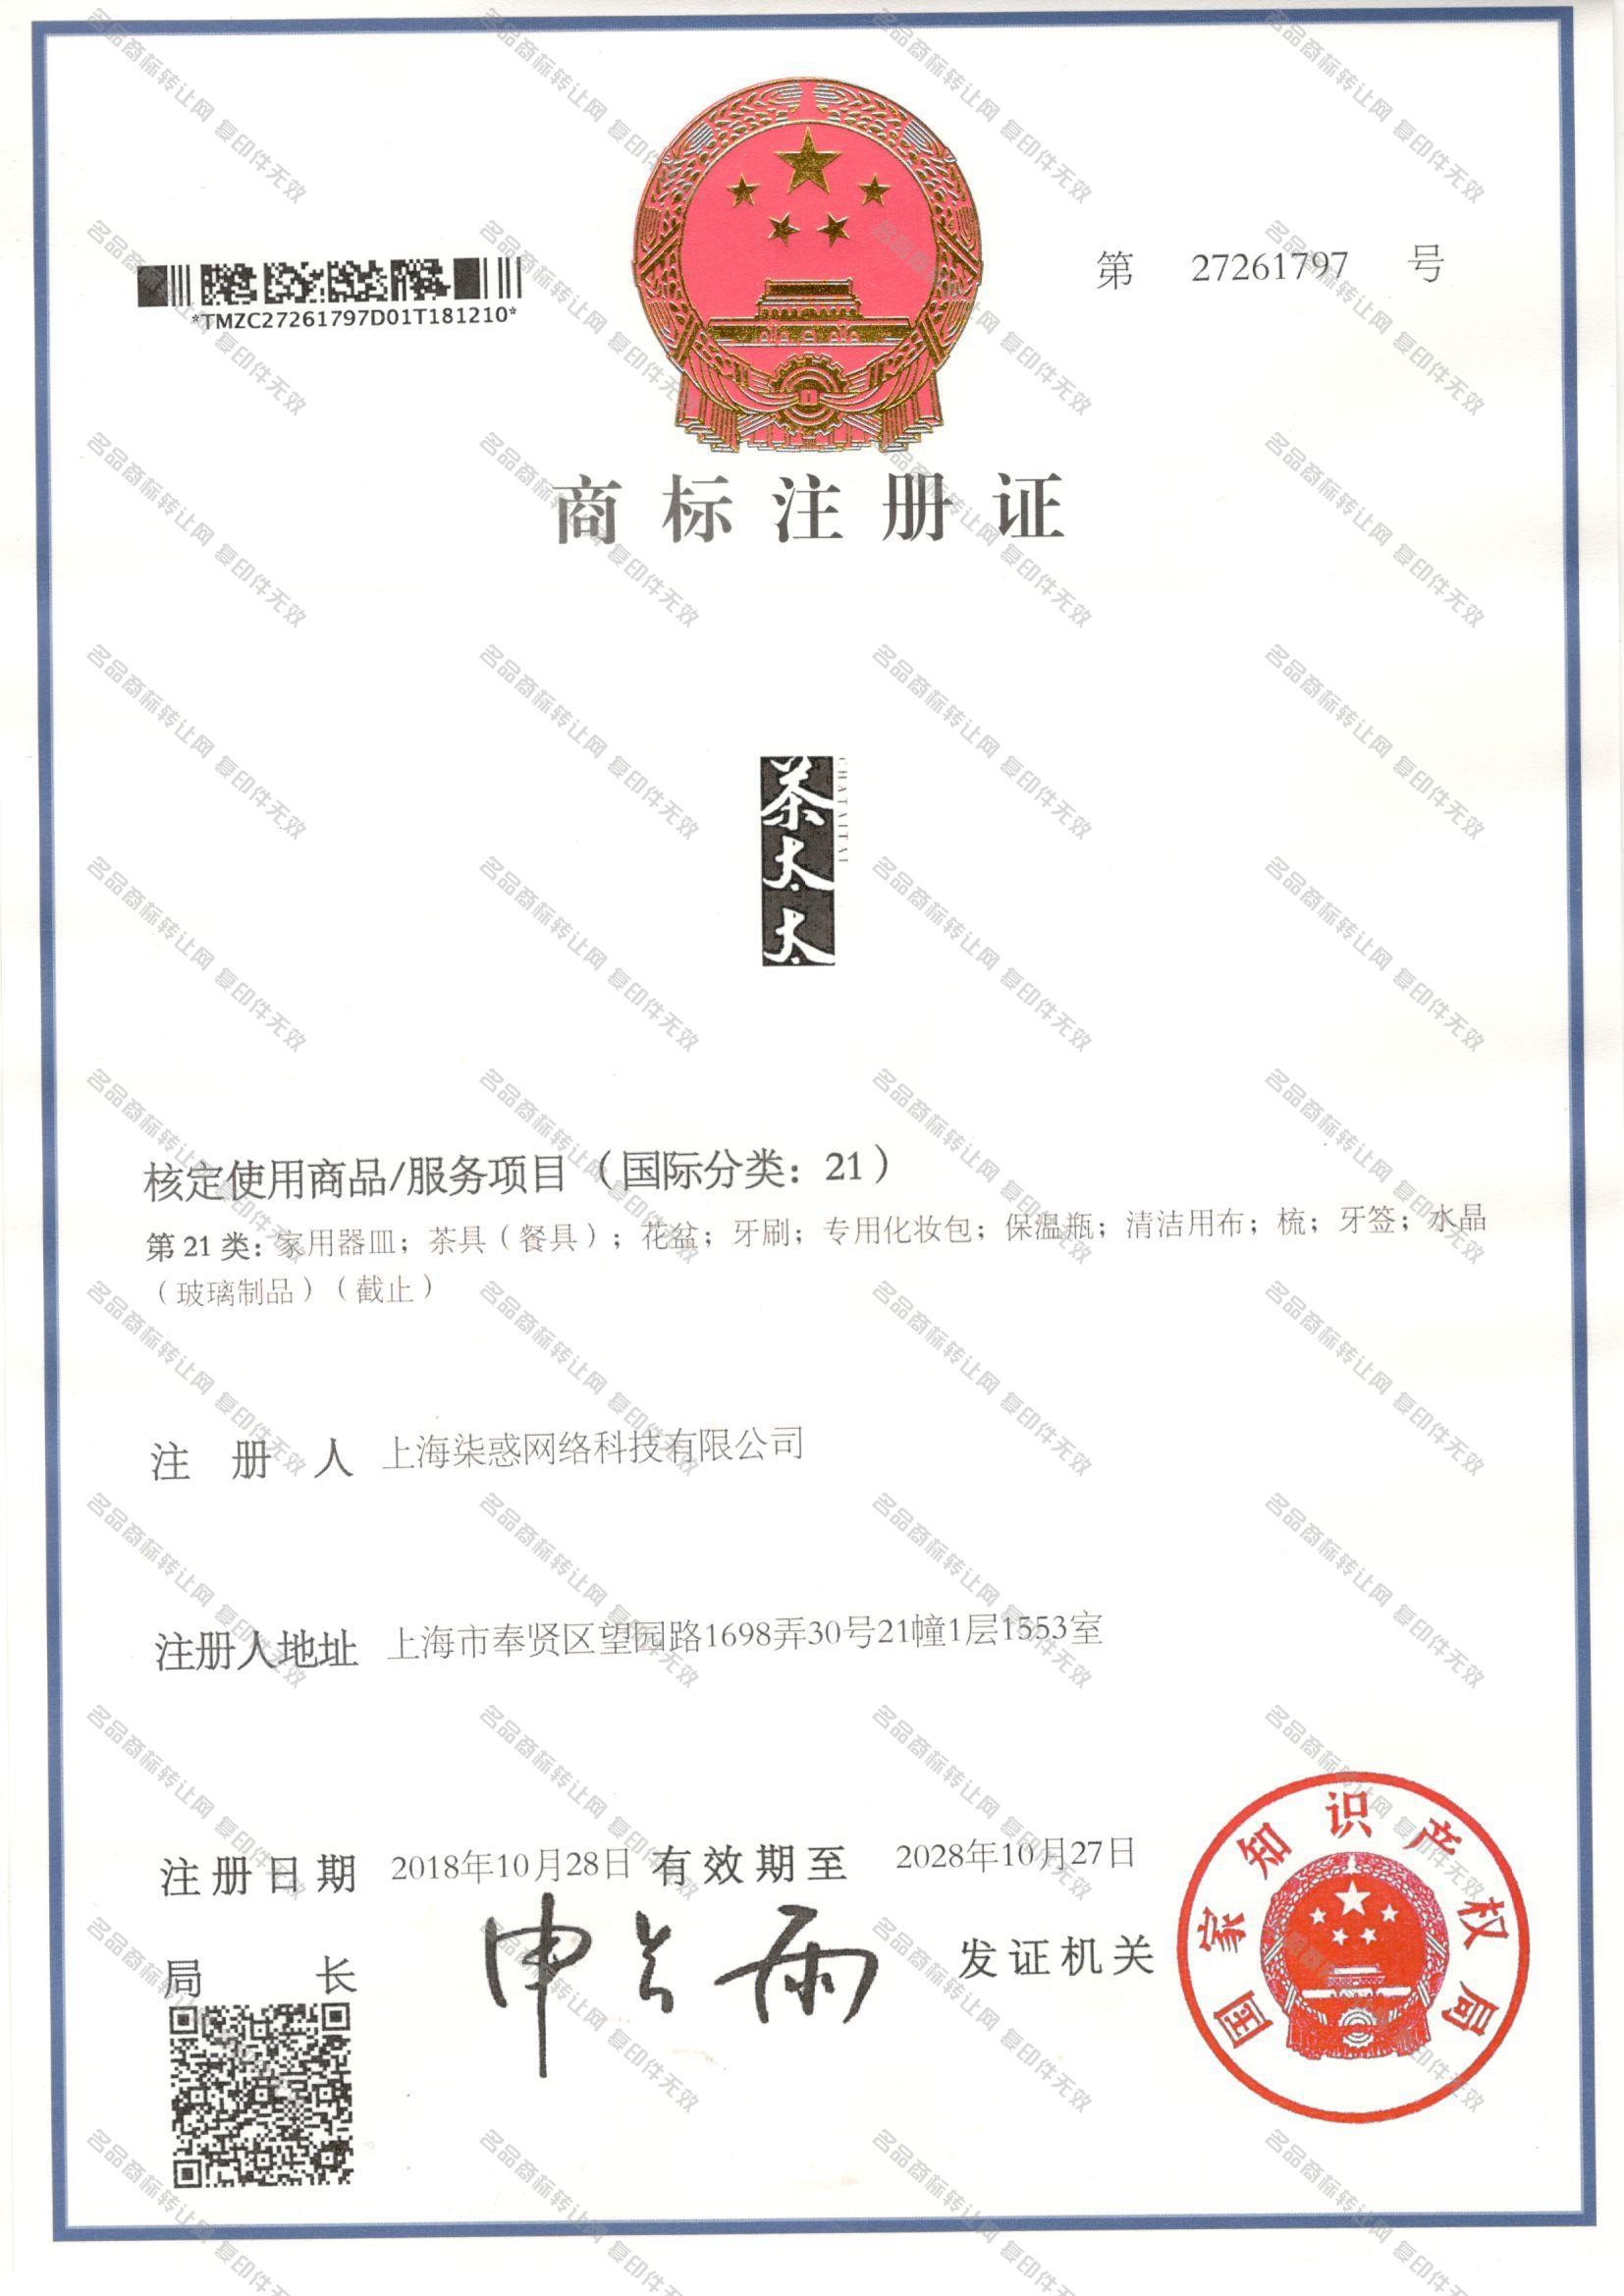 茶太太 CHATAITAI注册证